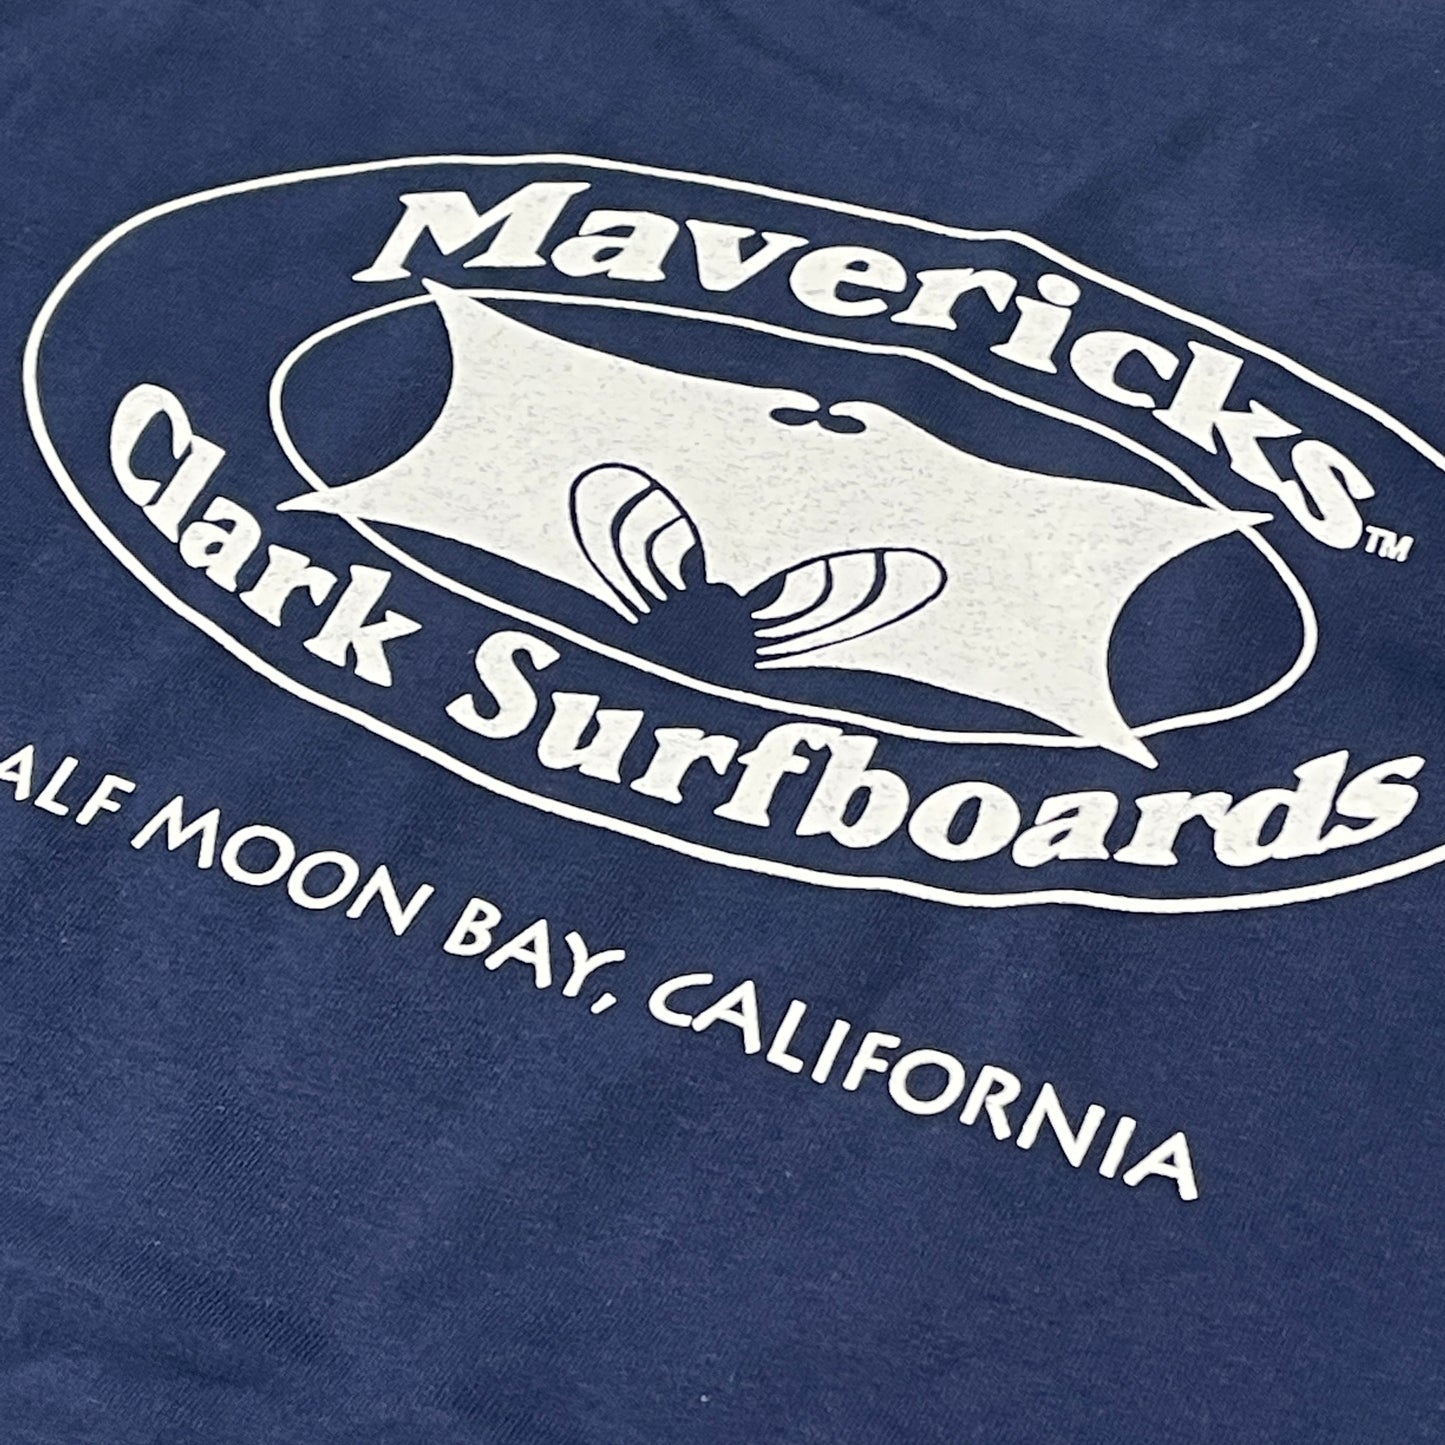 MAVERICKS CLARK SURFBOARDS T-Shirt Men's Sz L Navy Blue Hanes (New)